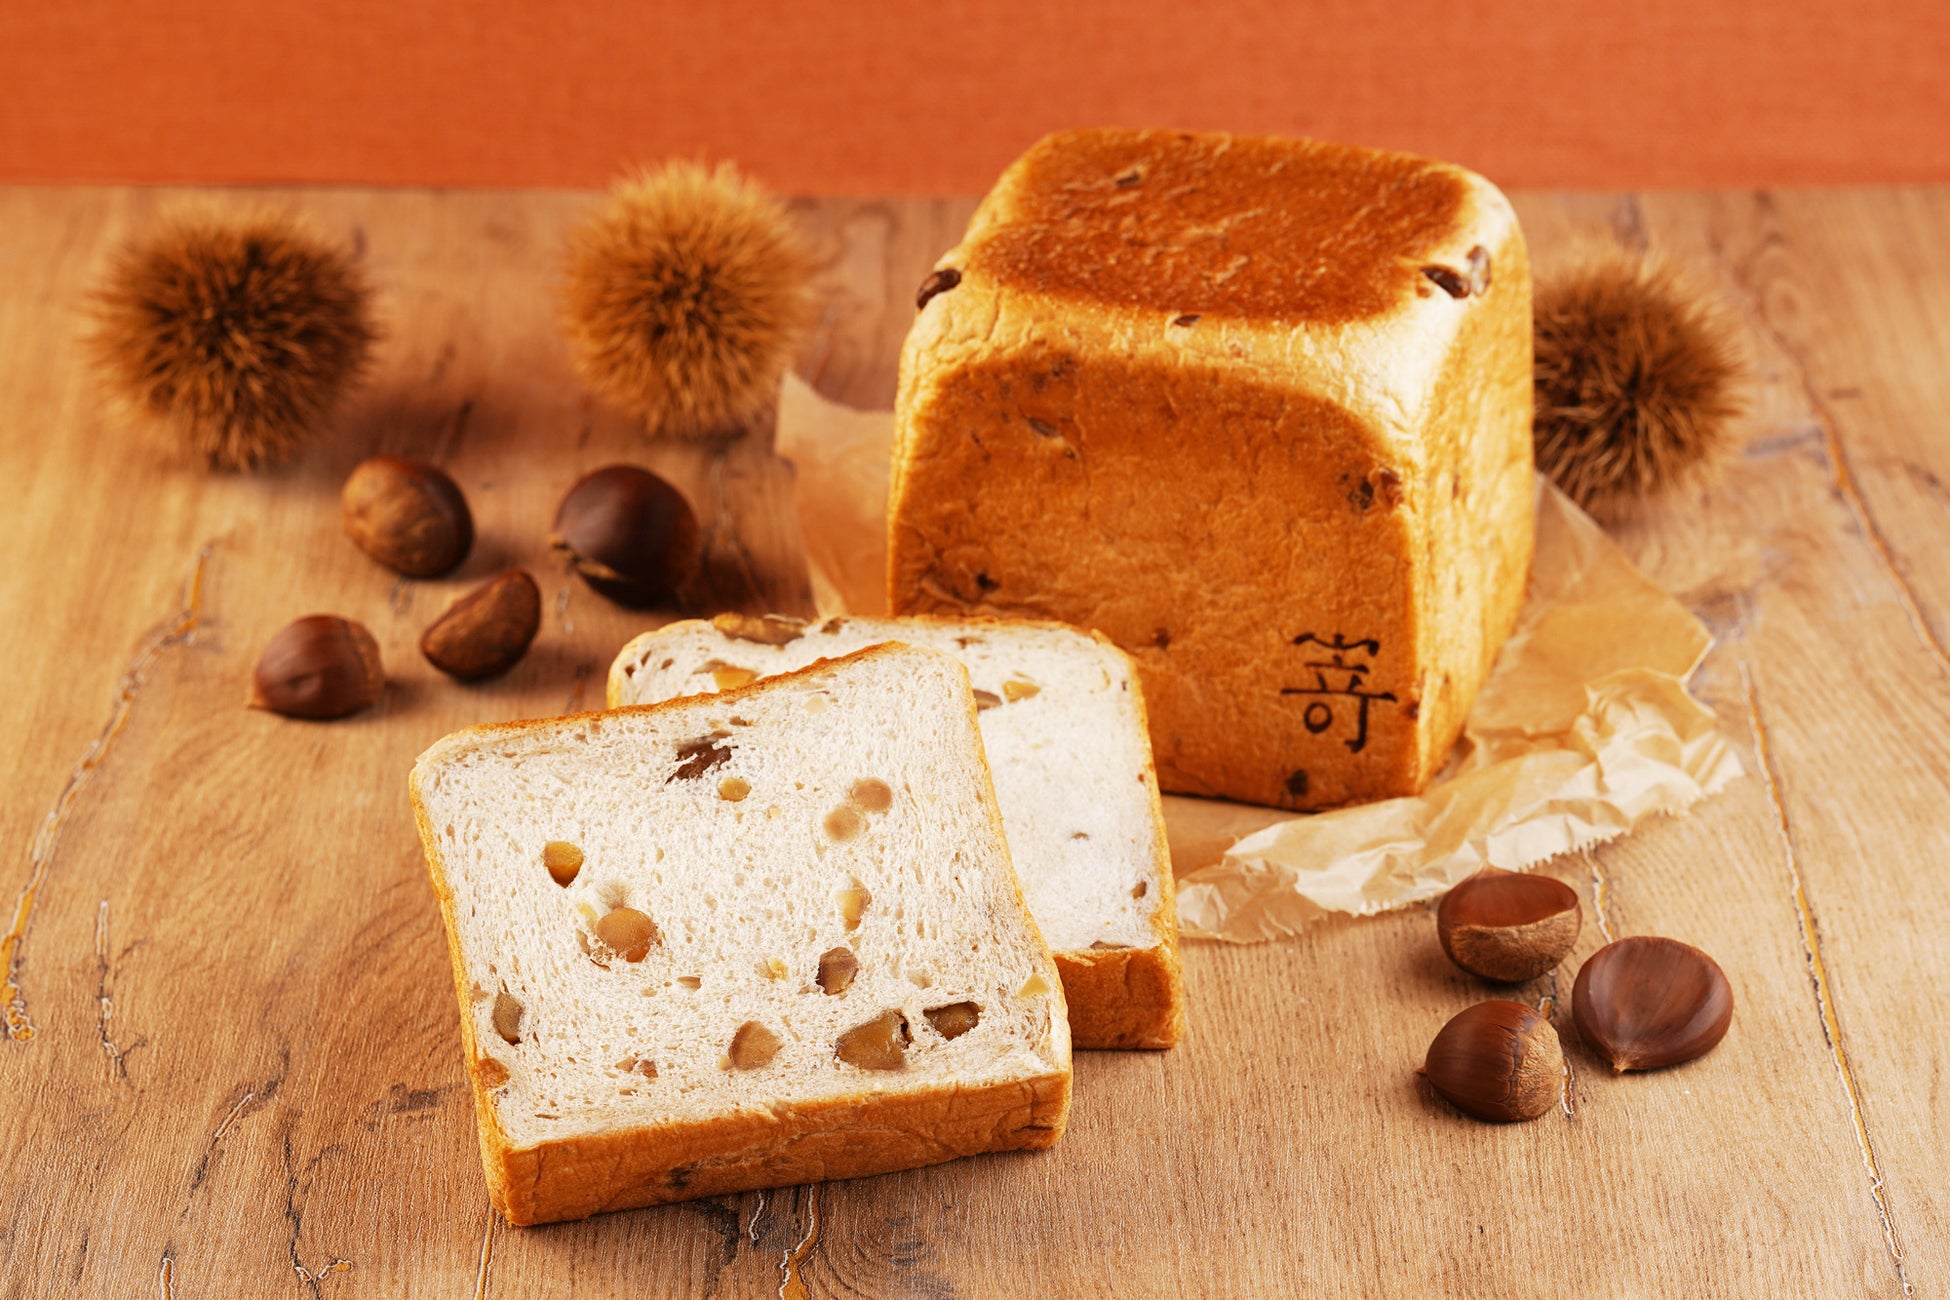 食パンの半分が栗で出来た、どこを食べてもマロン！なスイーツ食パン11月1日(水)より「マロンマロン食パン」が登場します。